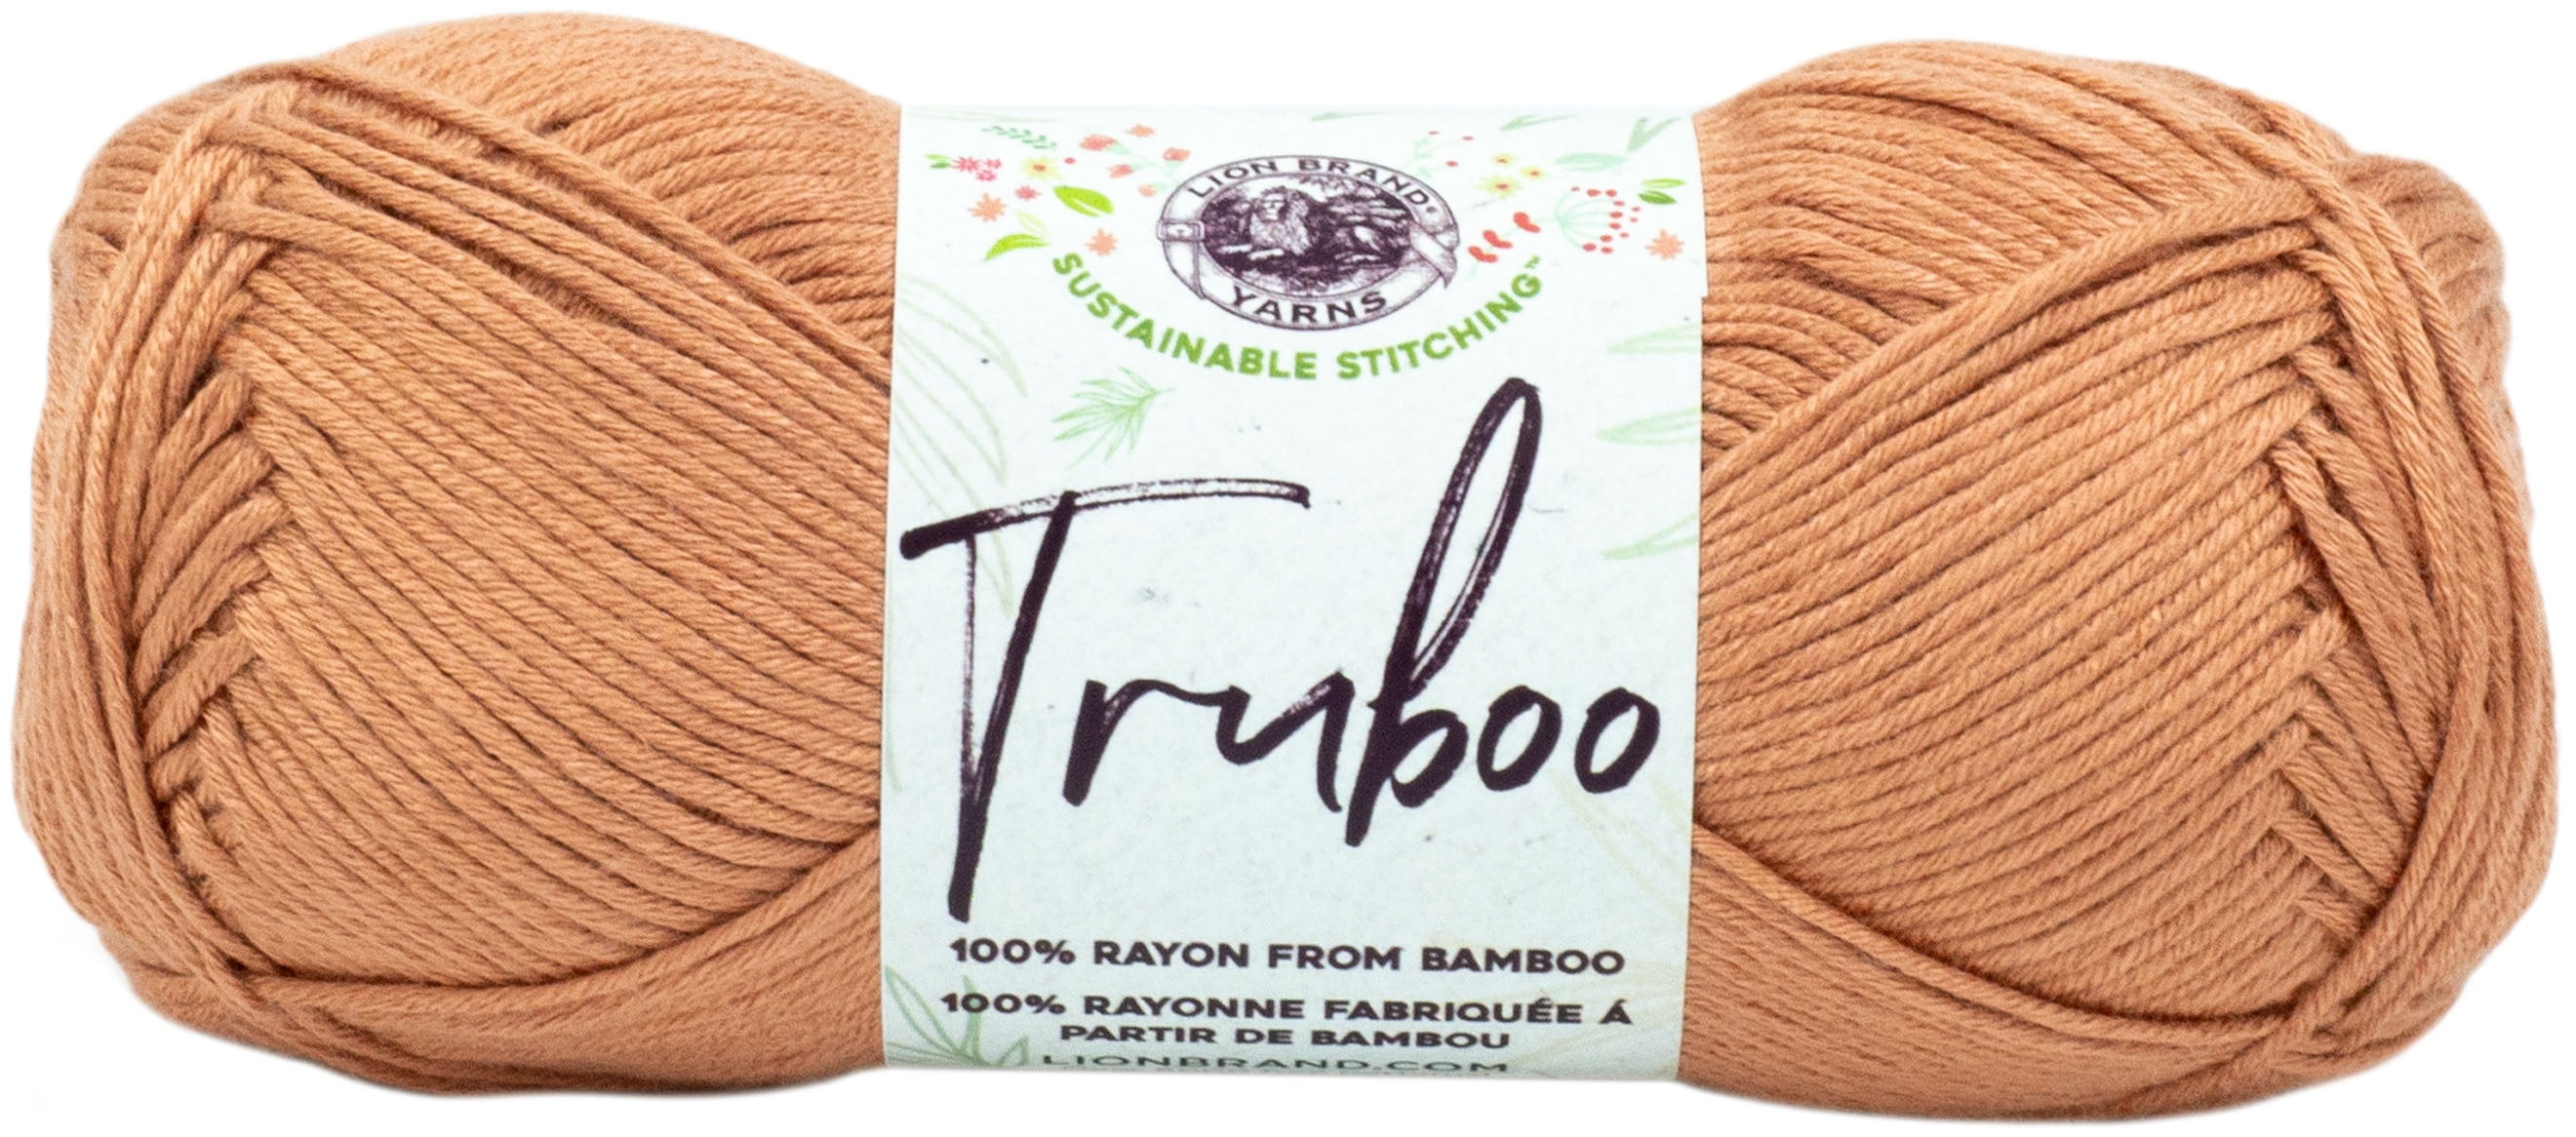 3-pack Truboo Yarn 